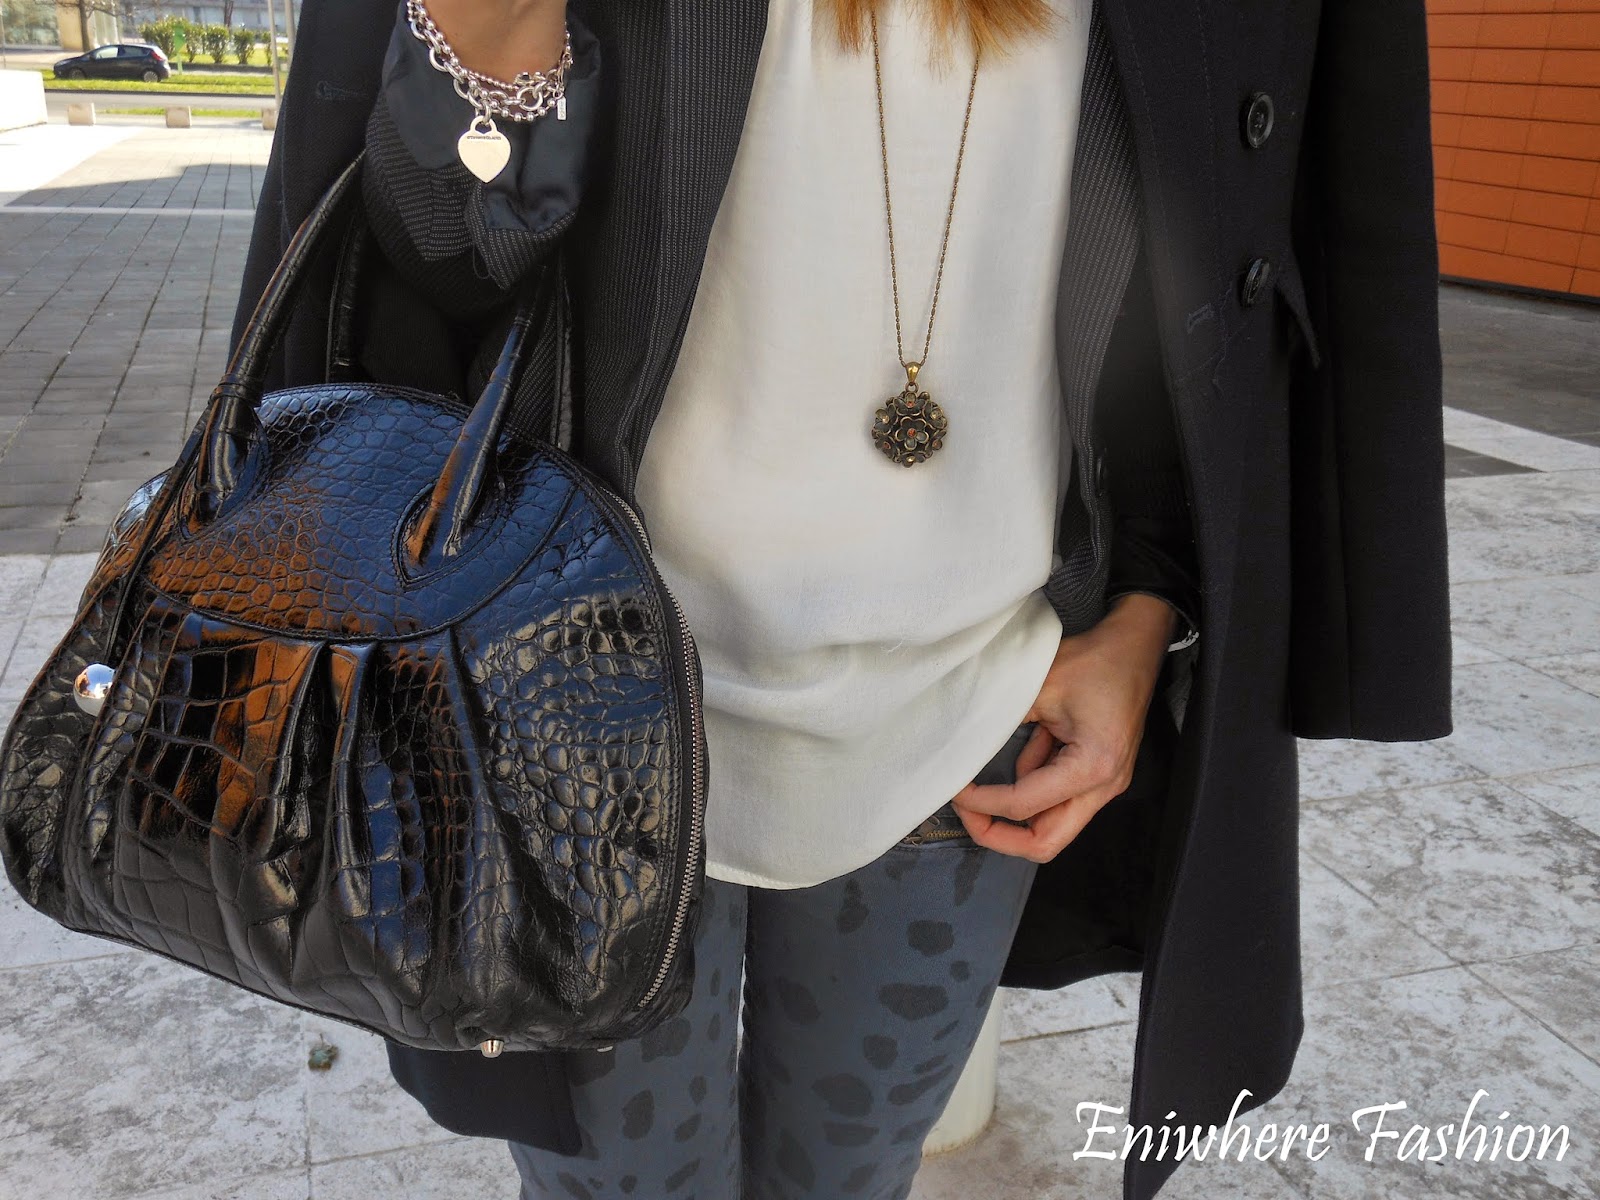 Eniwhere Fashion - jeans maculato - Brescia 2